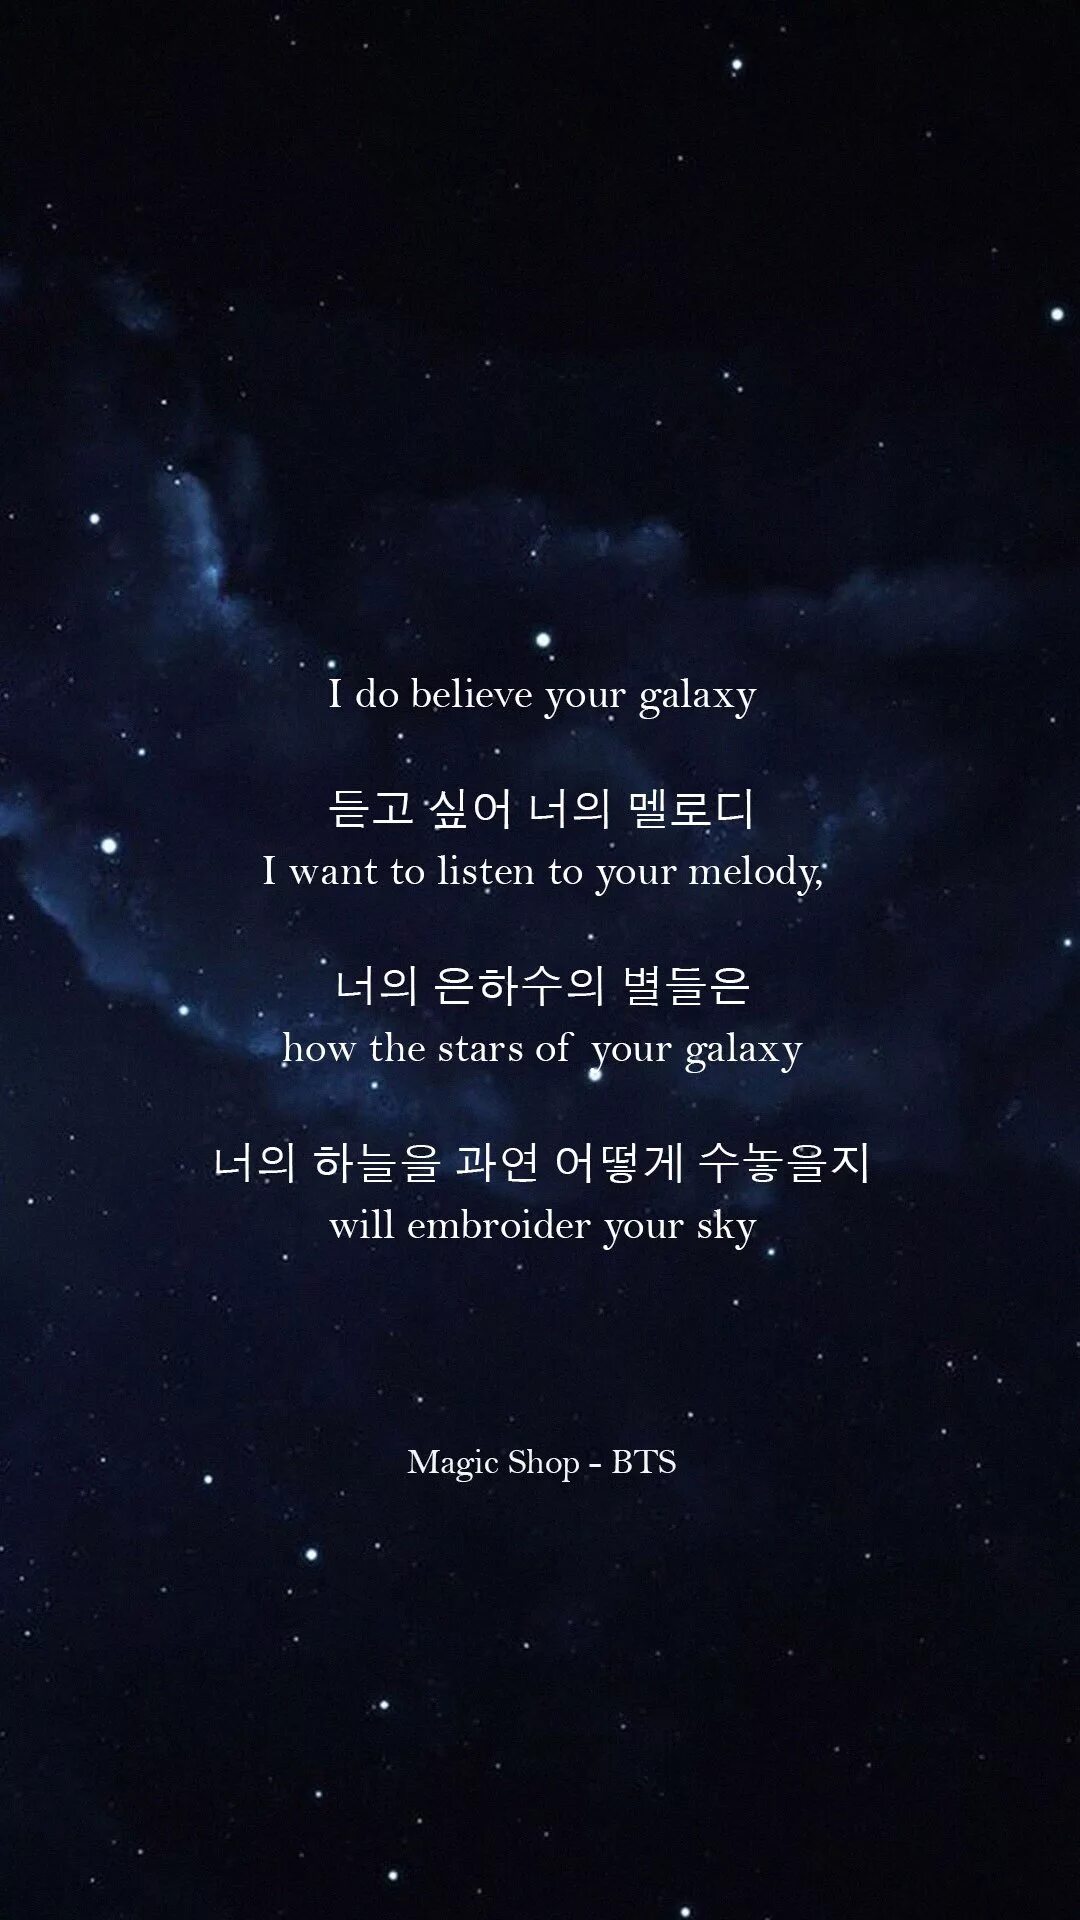 Magic lyrics. Цитаты из песен. BTS обои на телефон цитаты. Короткие цитаты из песен. Цитаты BTS на корейском.